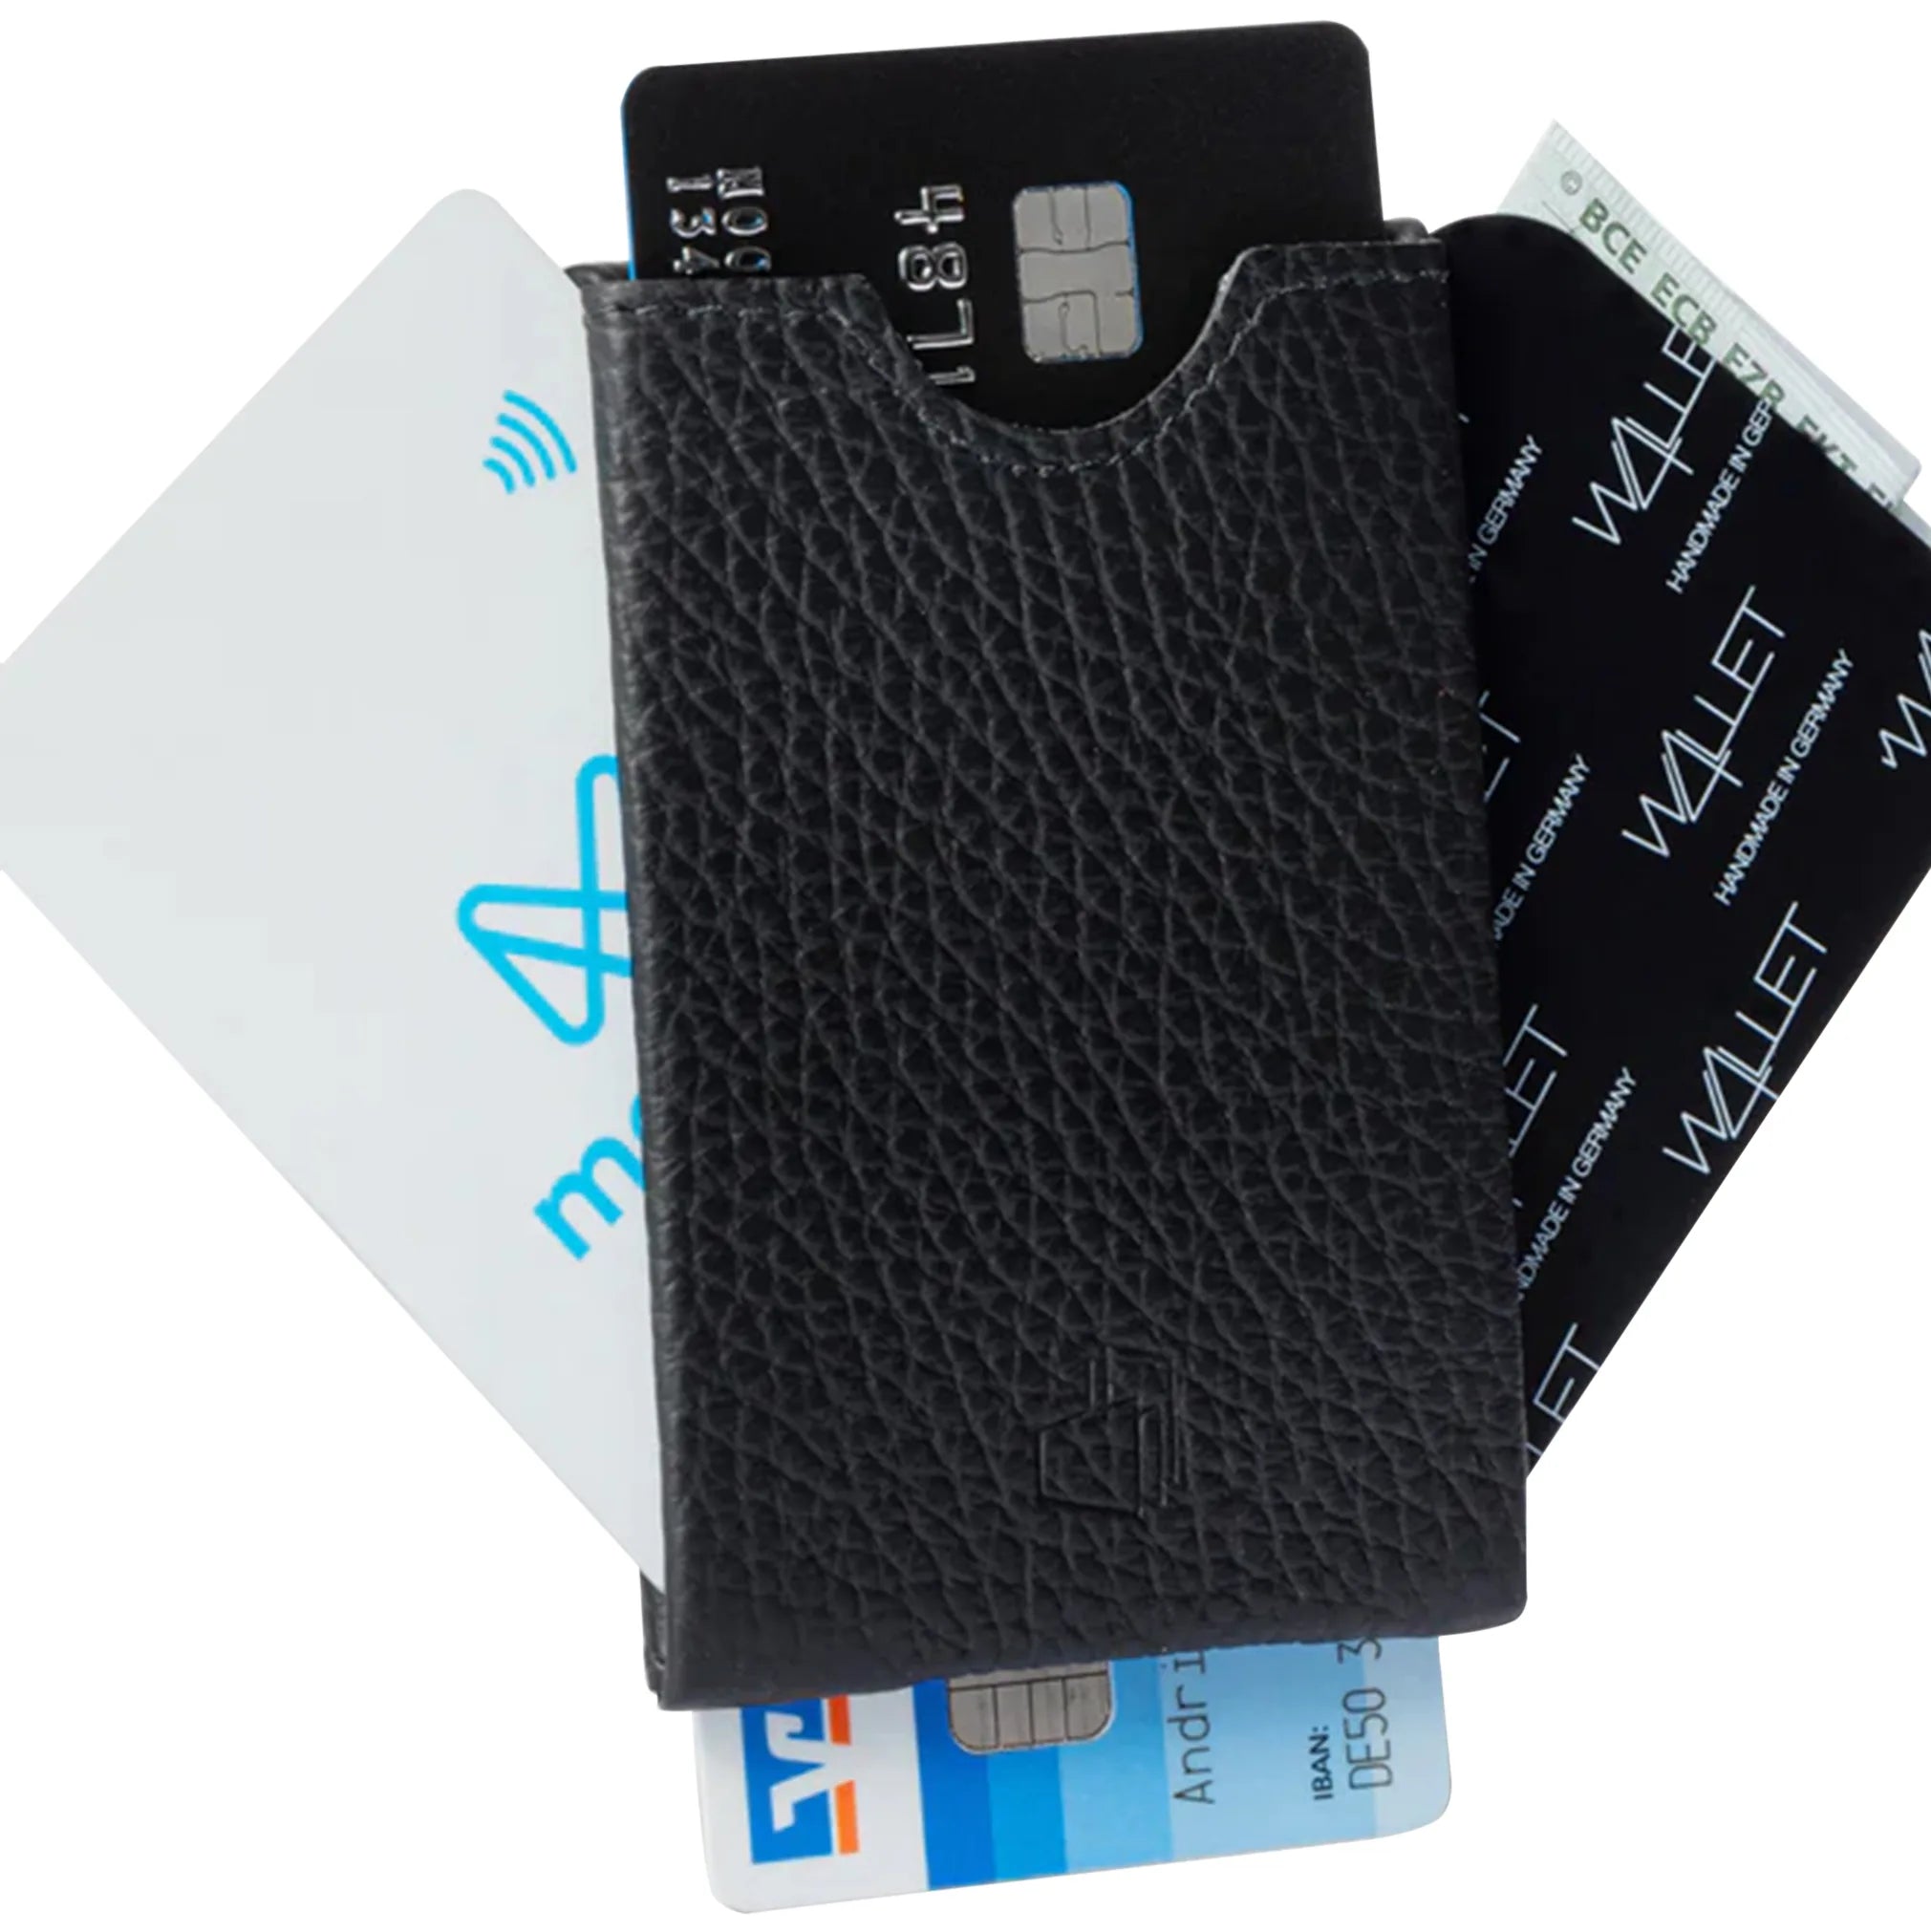 W4llet structured leather credit card holder 9 cm - Cobalt